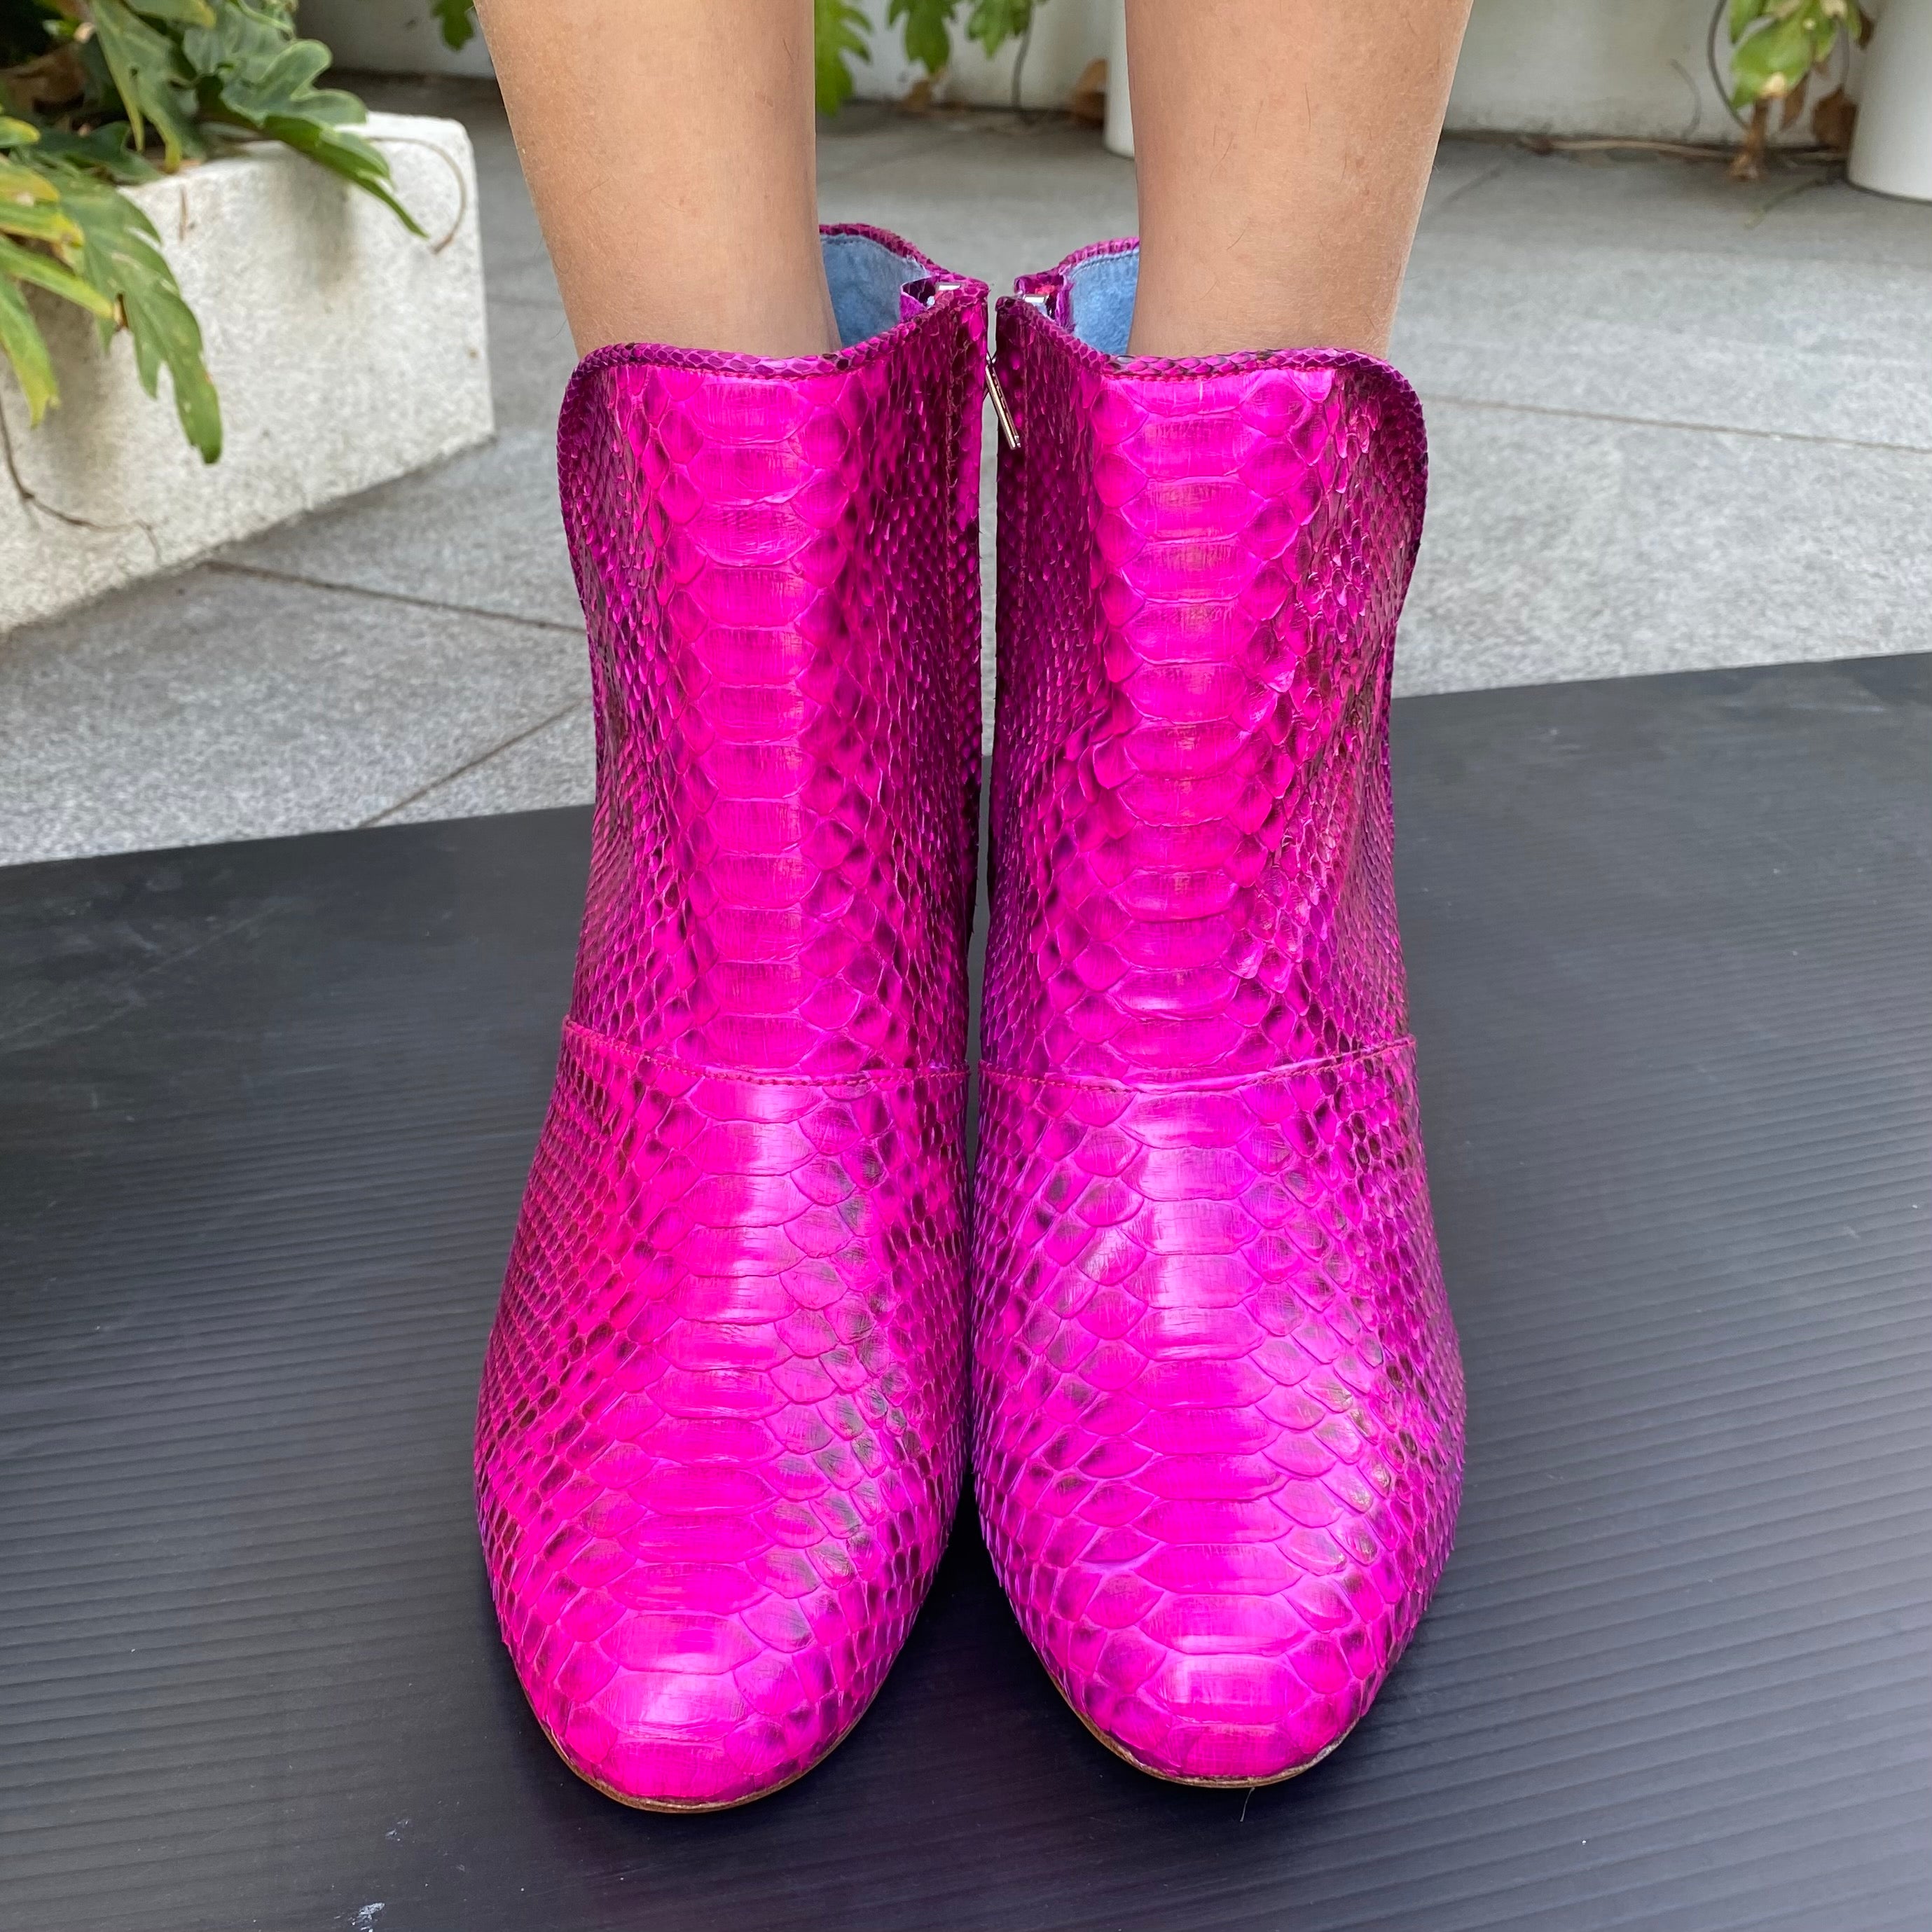 Joey boot - Neon pink snakeskin